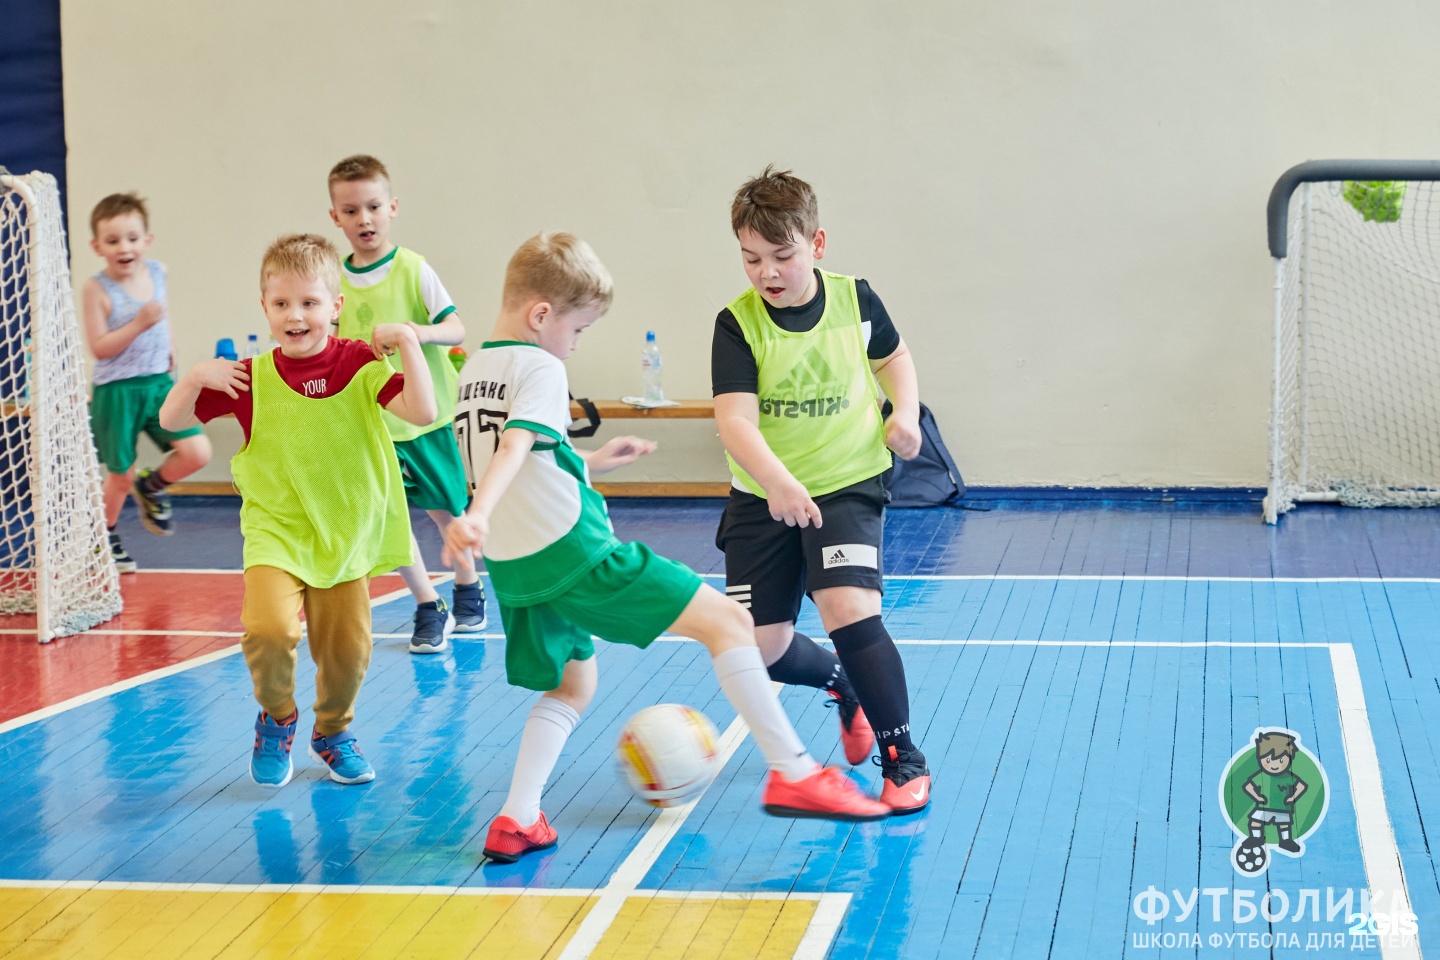 Футбольная школа петербург